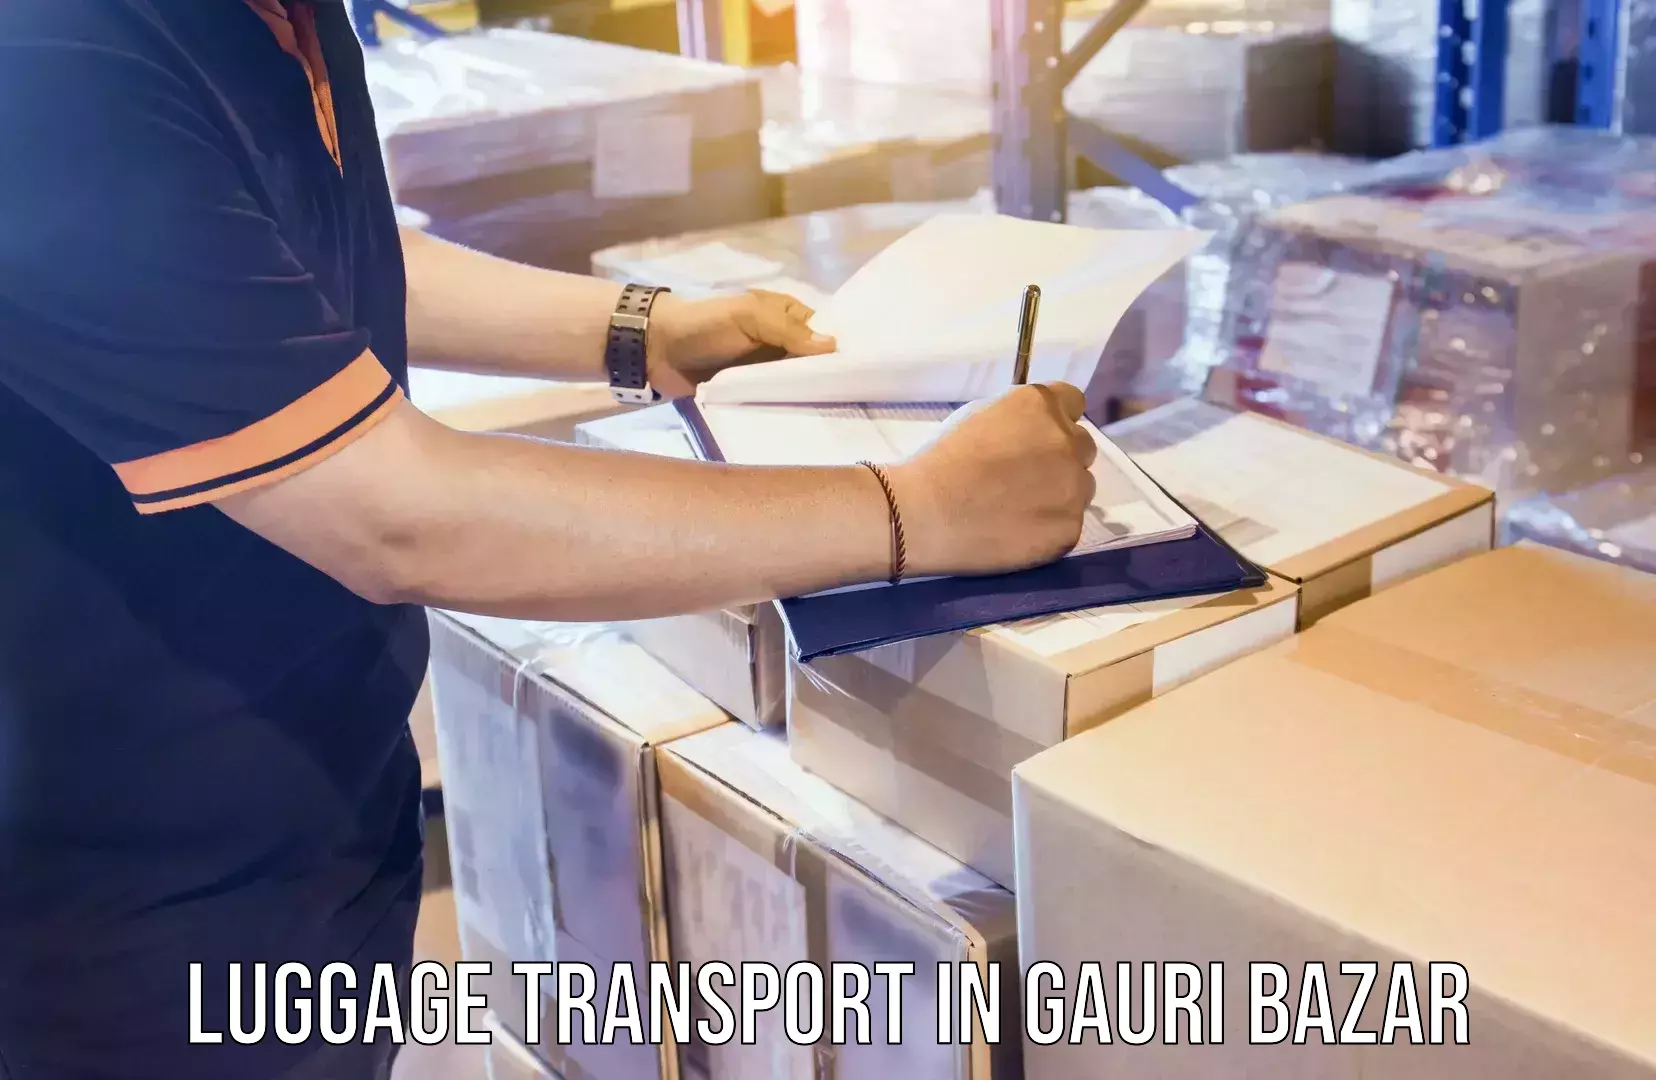 Heavy luggage shipping in Gauri Bazar